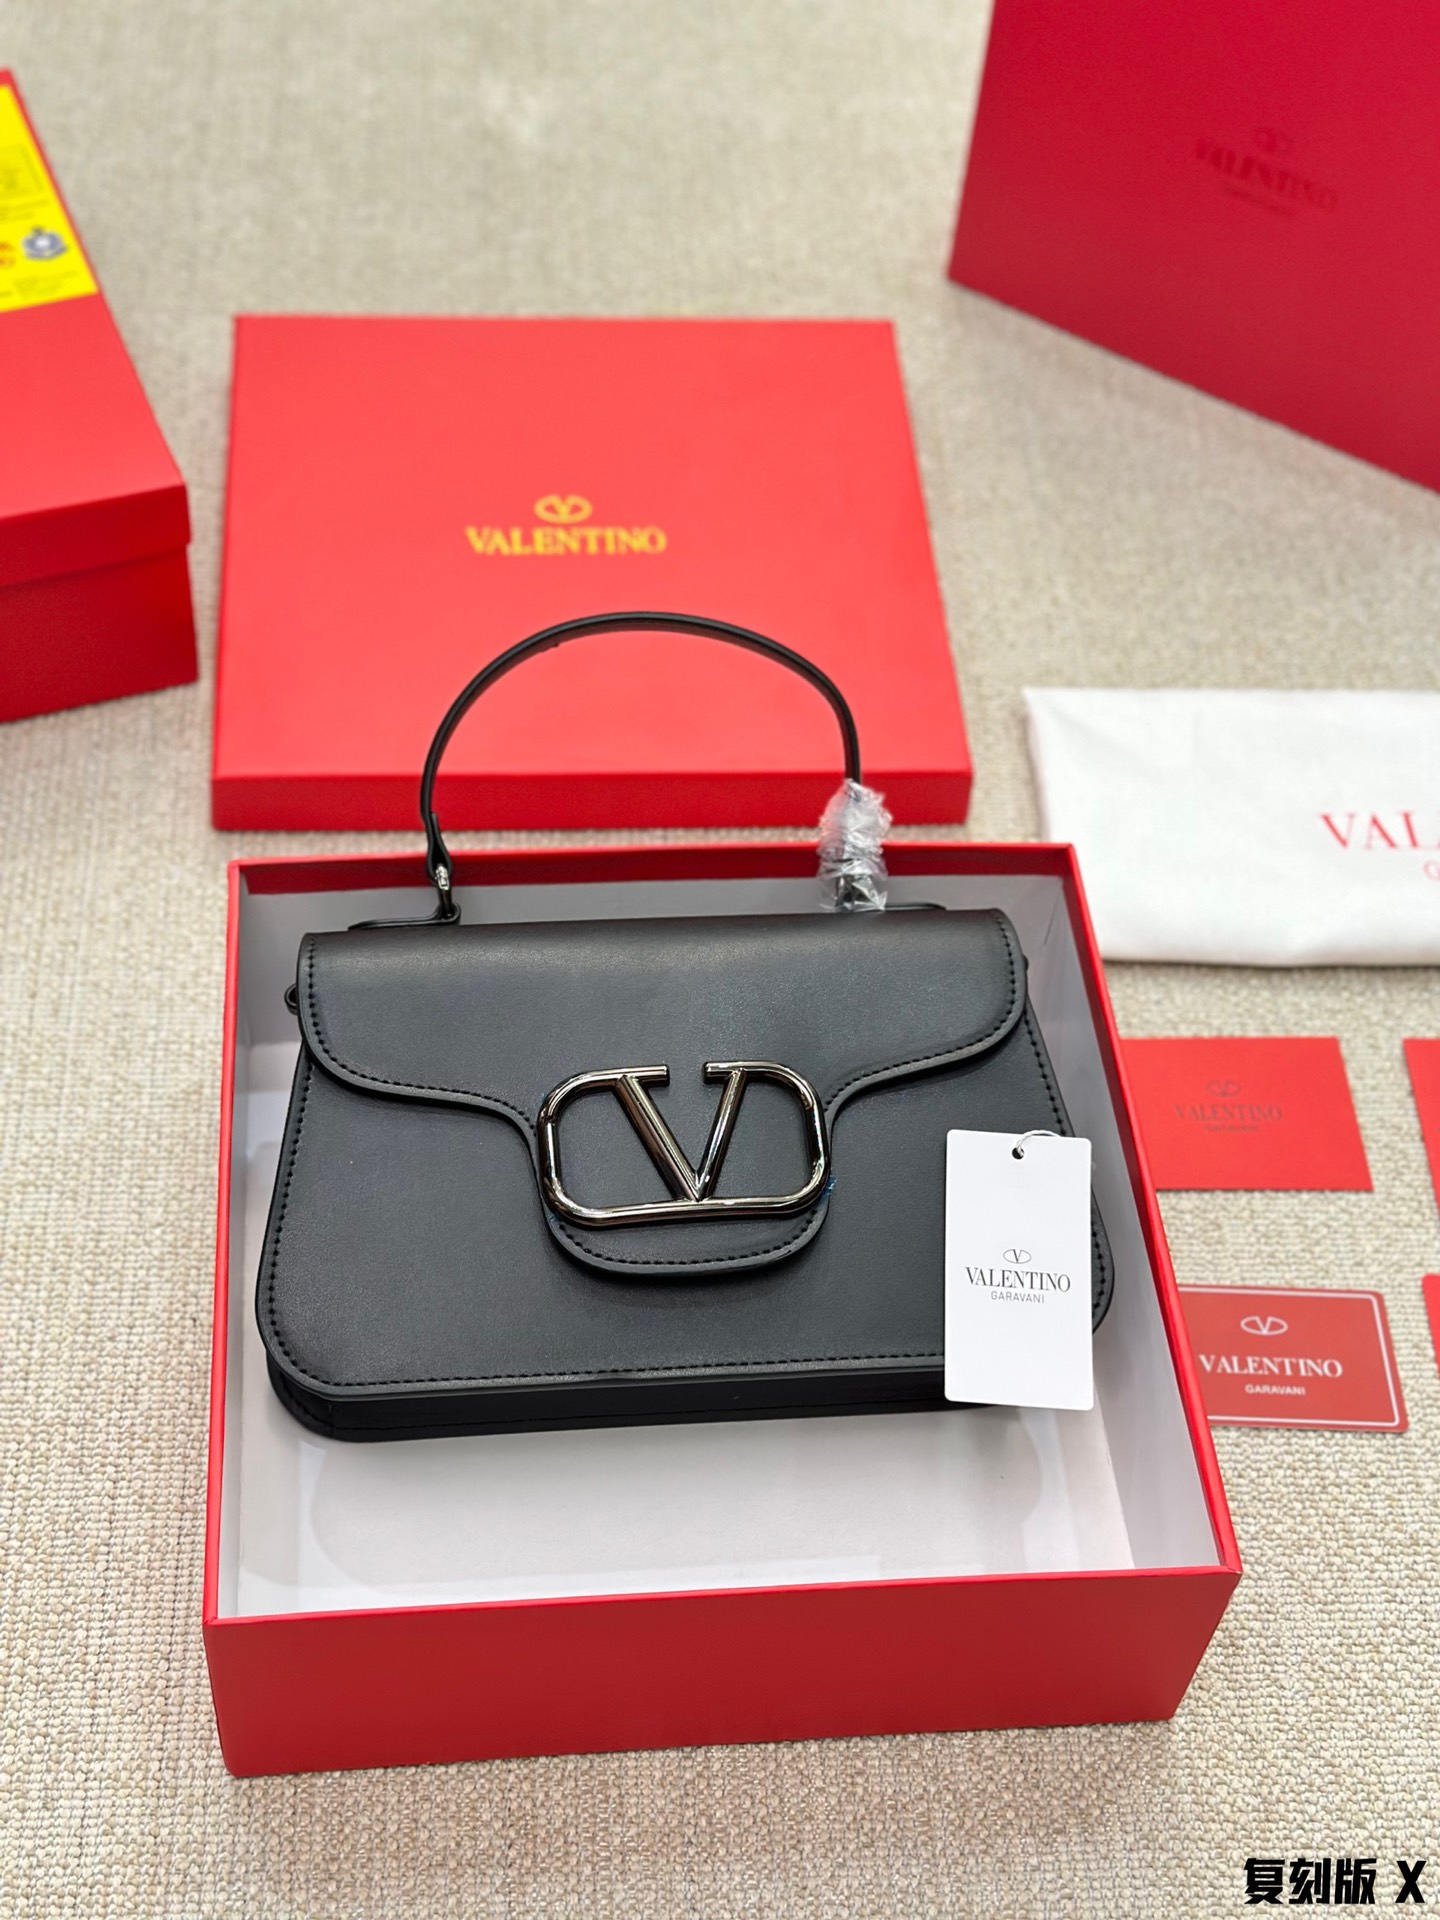 Valentino hand-held shoulder bag